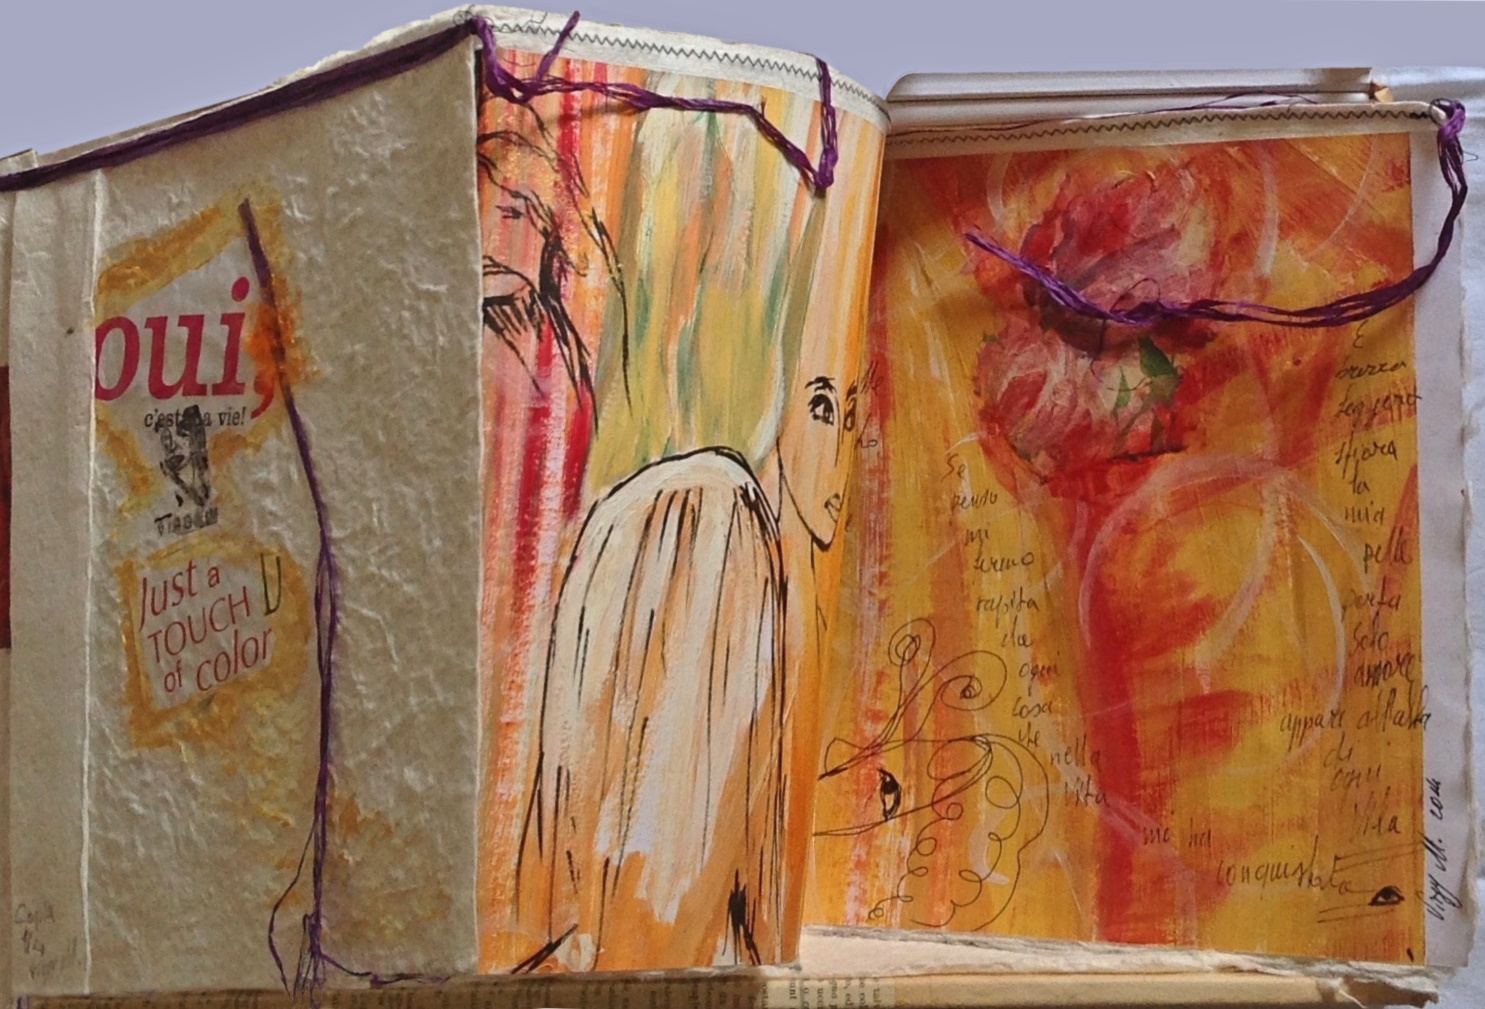 Virginia Milici-Libro d'artista-Oui  c'est la vie-Just a touch of color-tecnica mista su carta